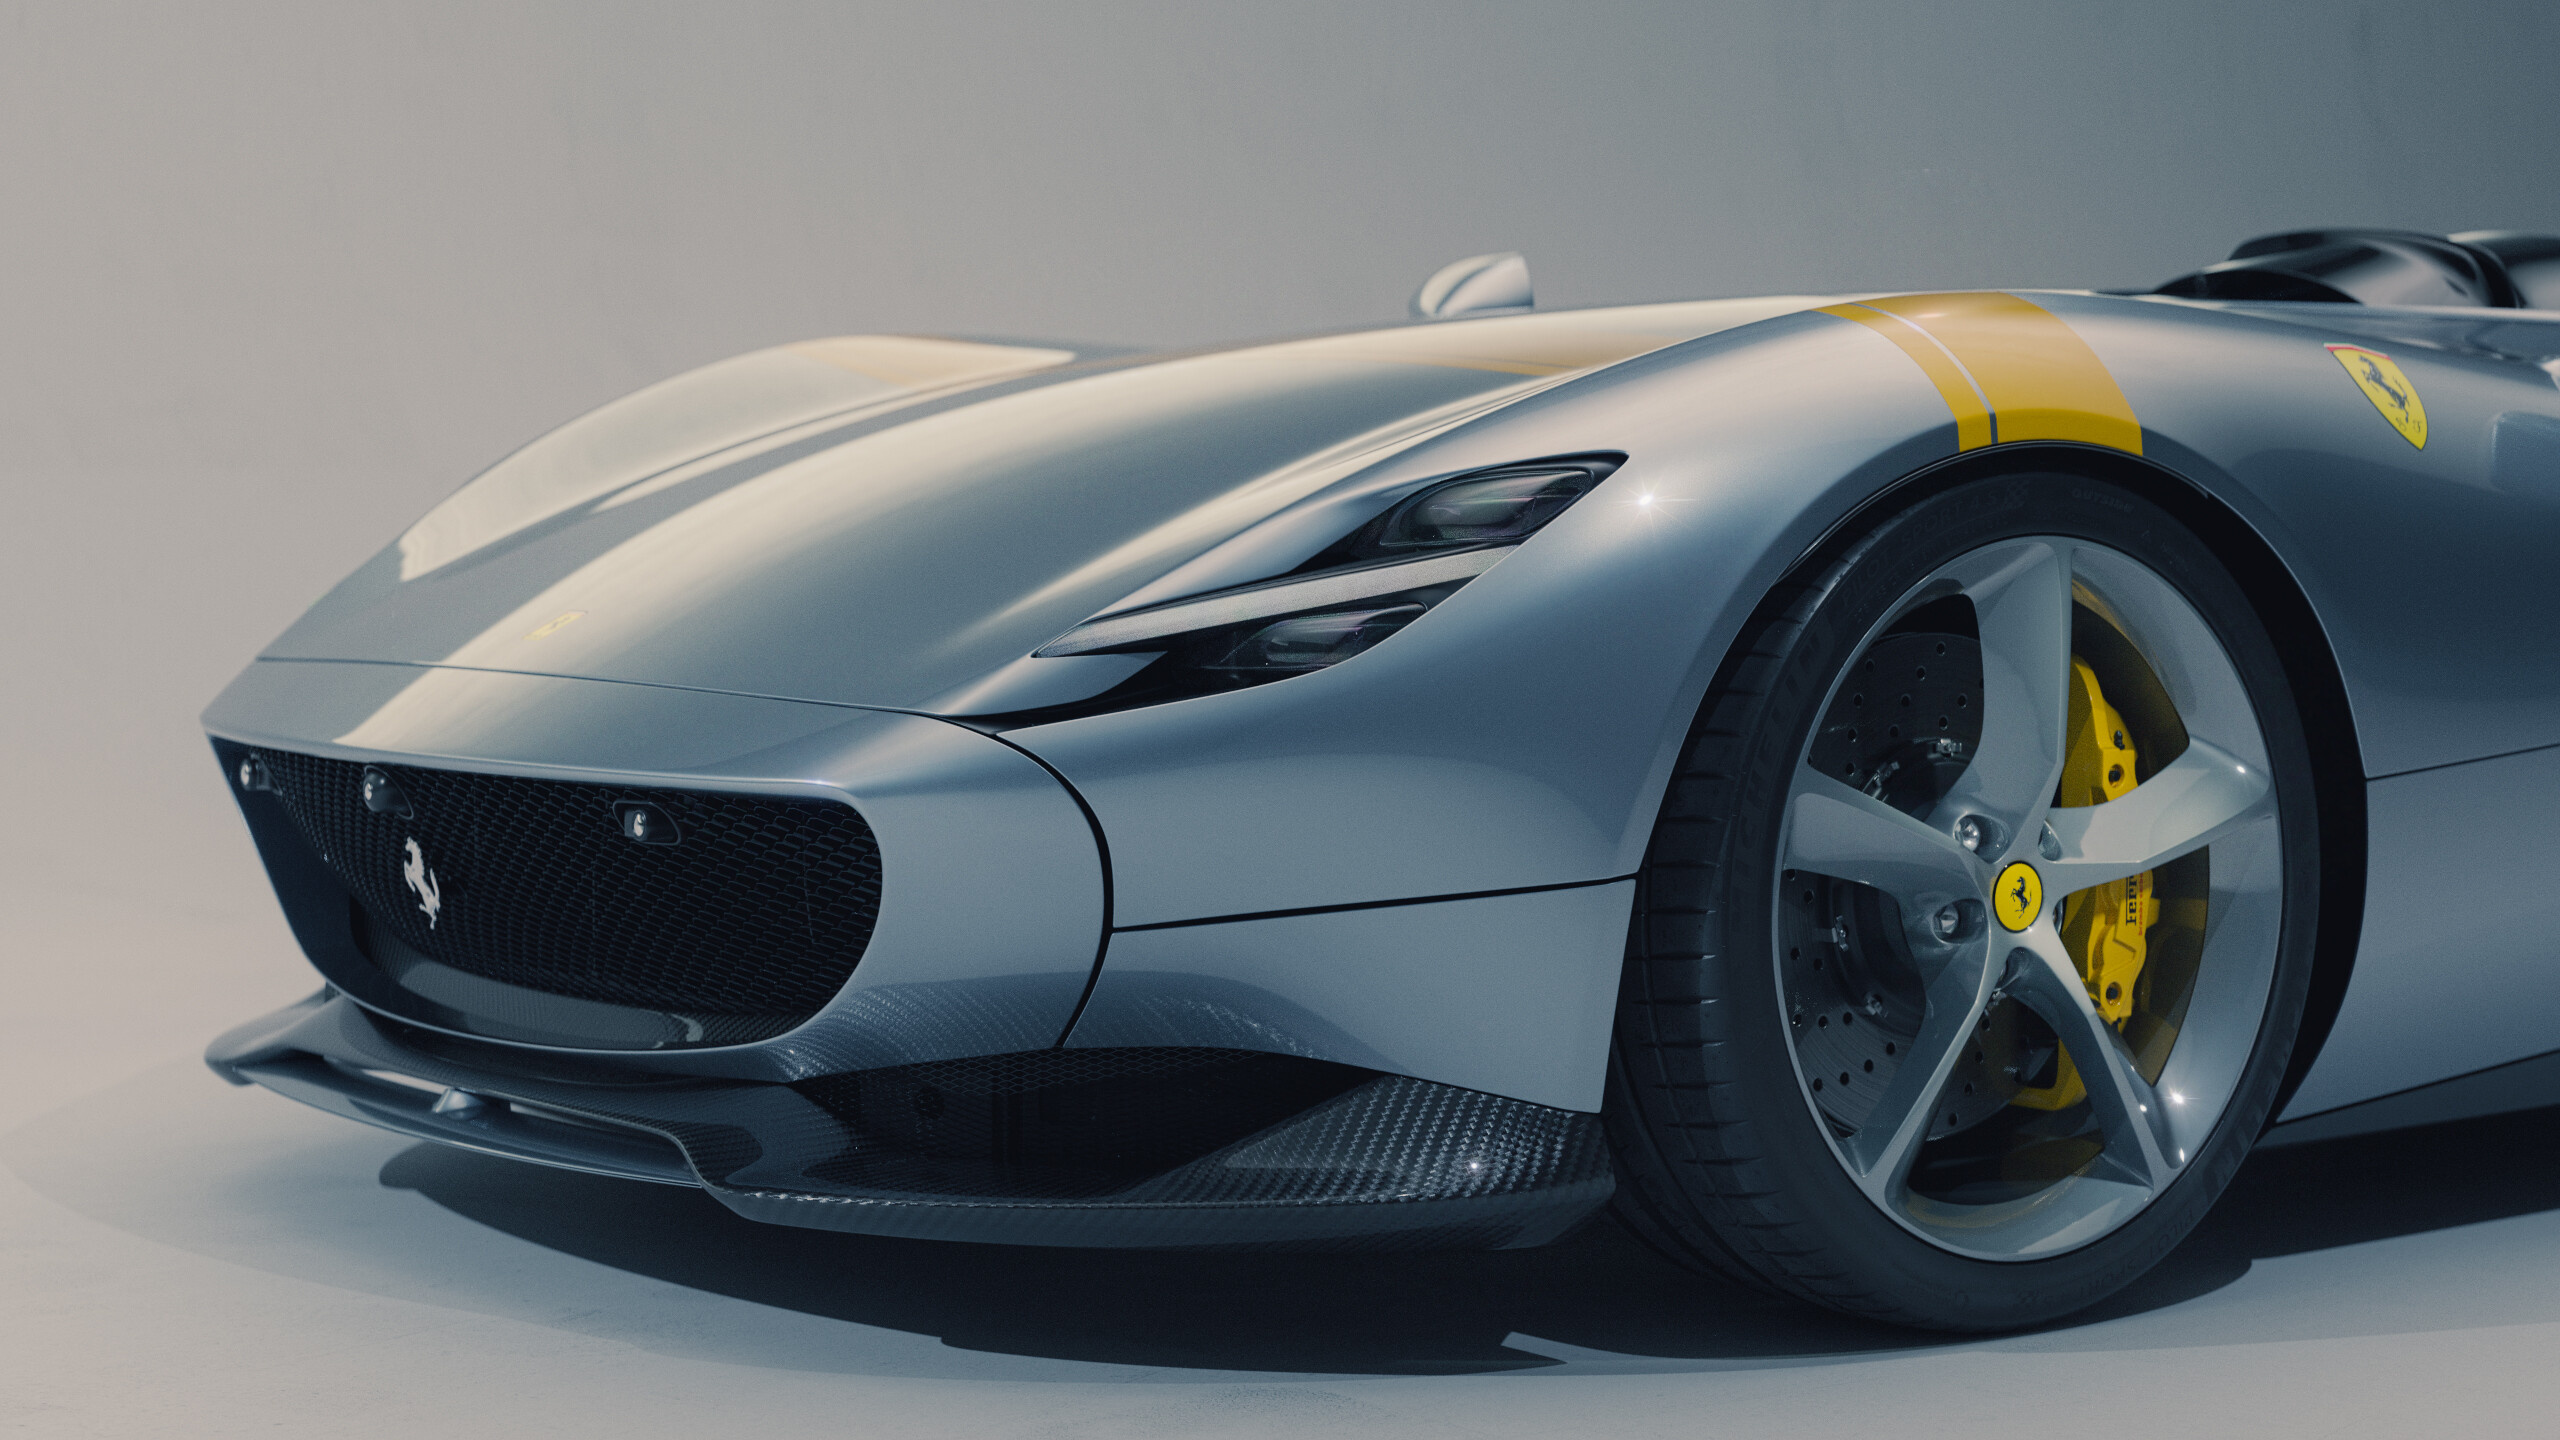 Ferrari Monza, Auto engineering marvel, Unmistakable style, Masterful execution, 2560x1440 HD Desktop